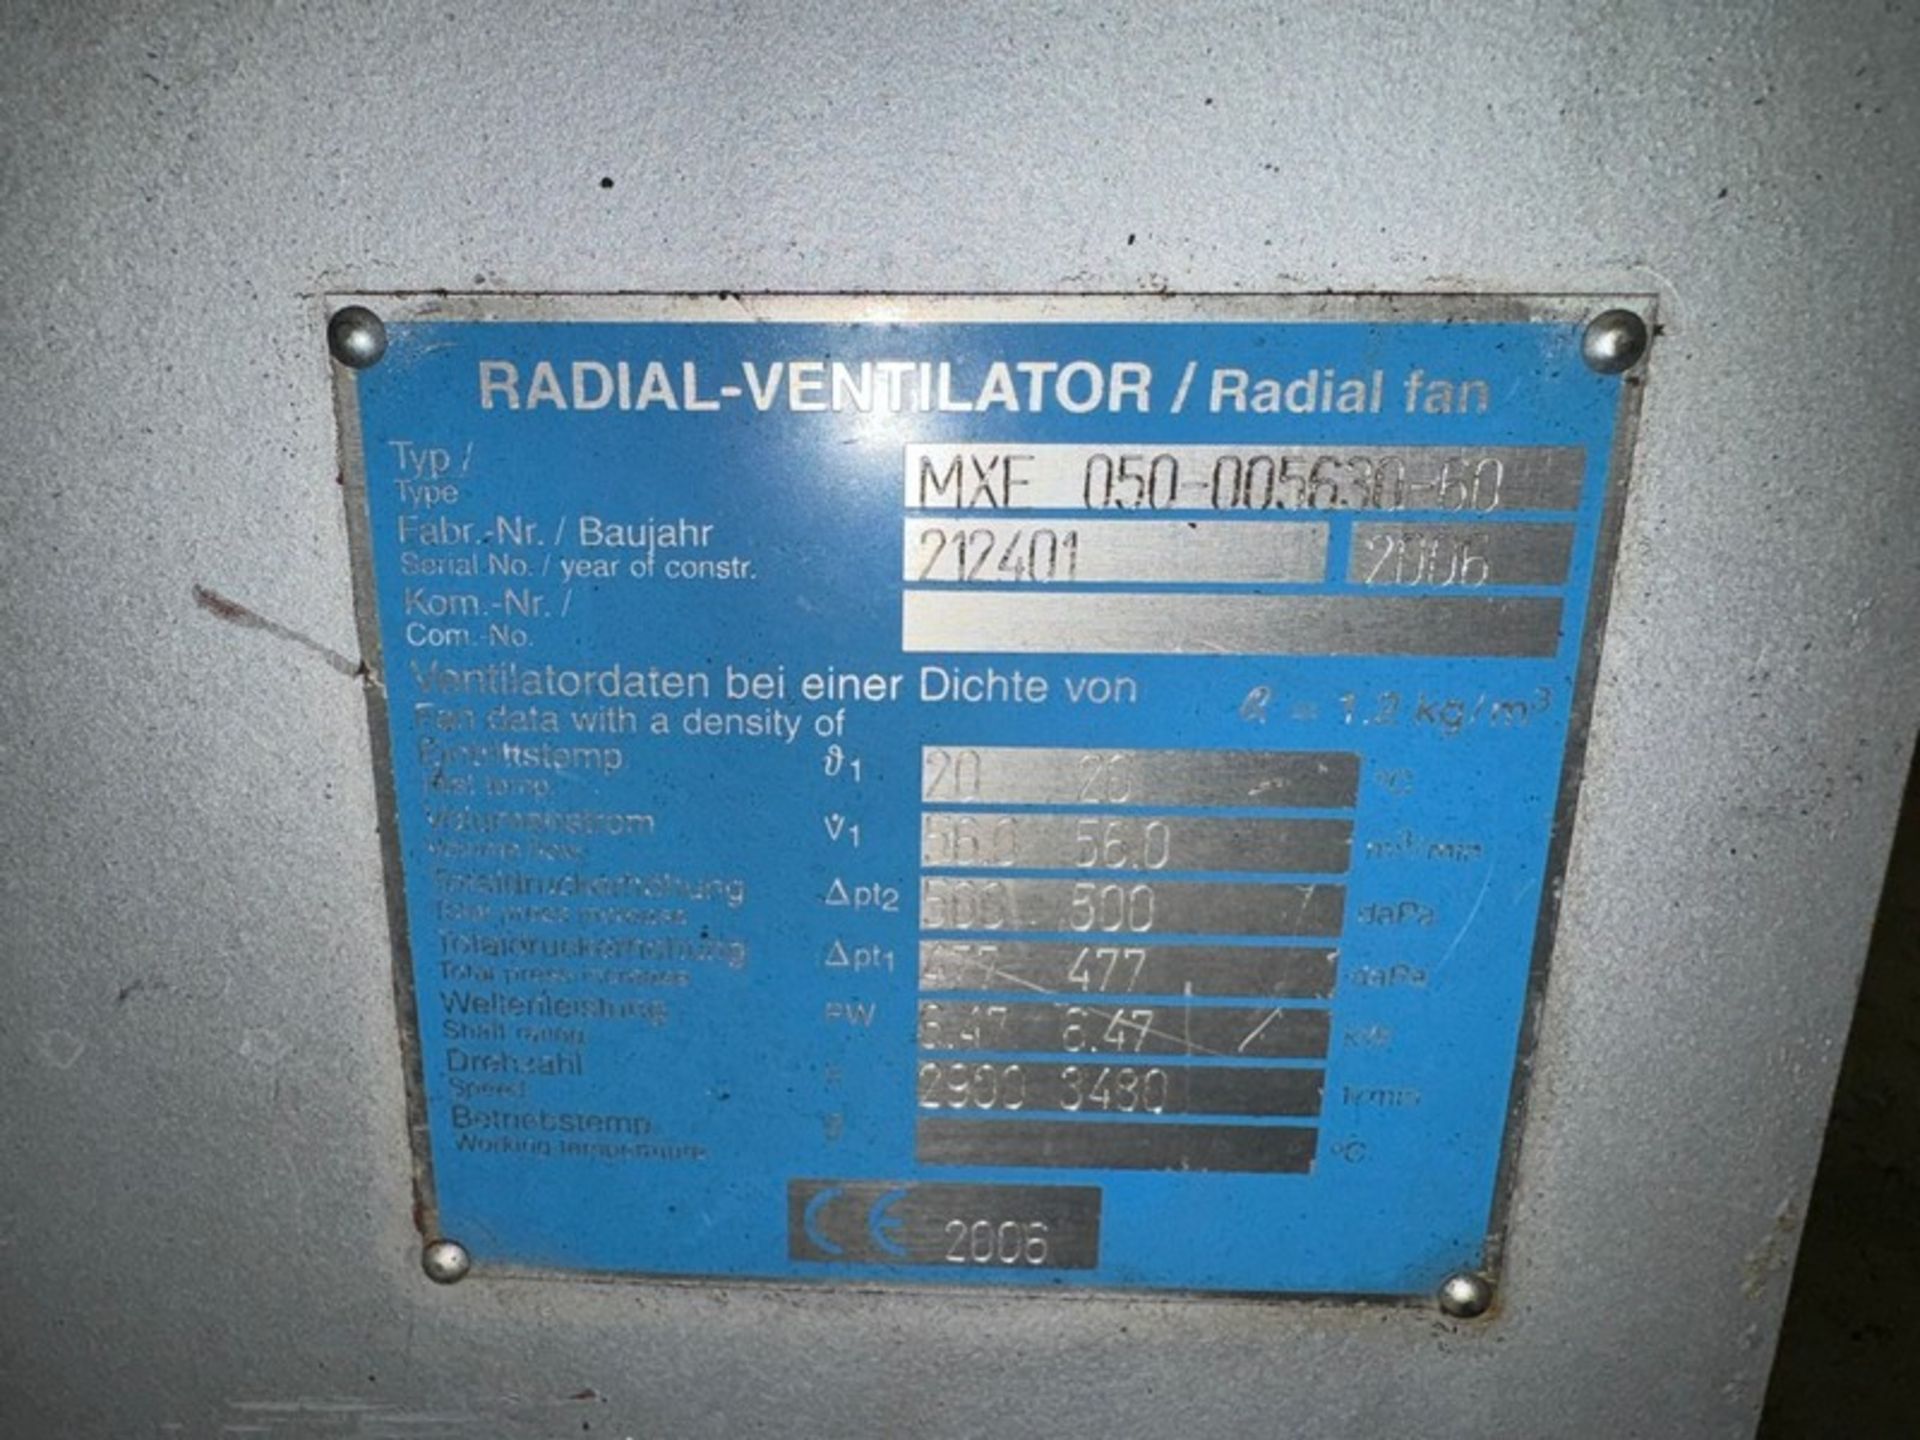 2006 Wartung der Öllager Radial Fresh Air Fan, M/N MXF 050-005630-60, S/N 212401, with Siemen - Bild 4 aus 5